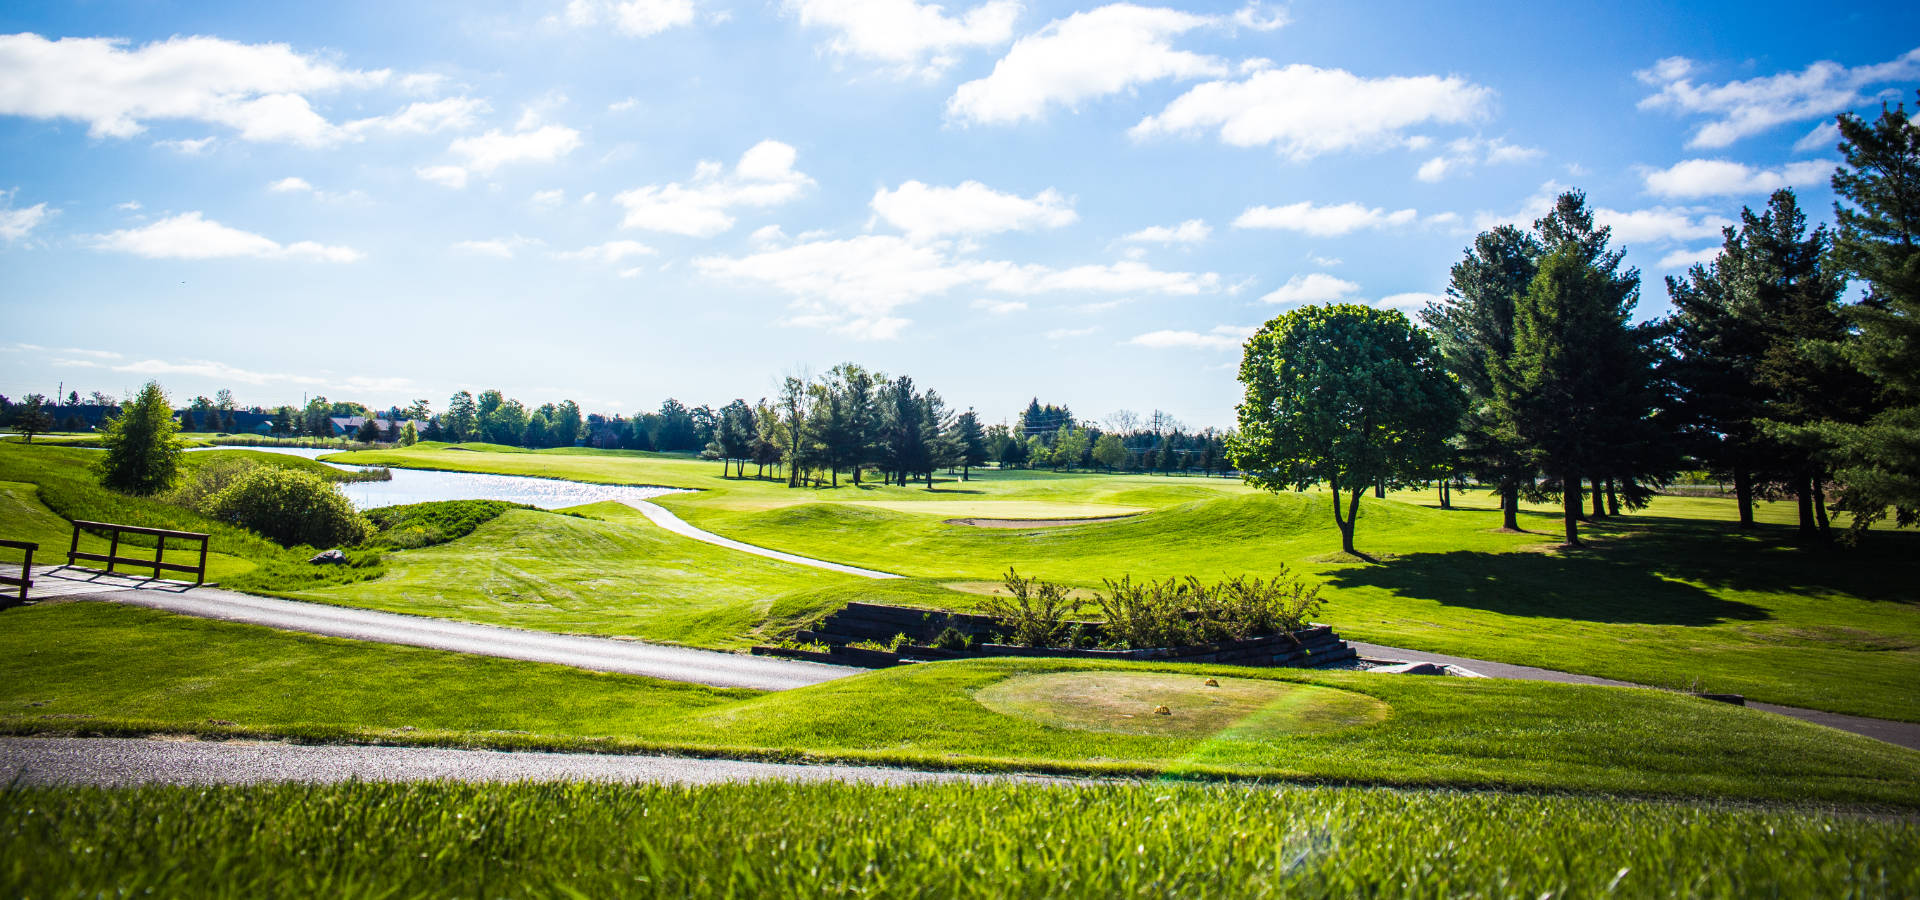 Golf Course in in Lexington, MI.